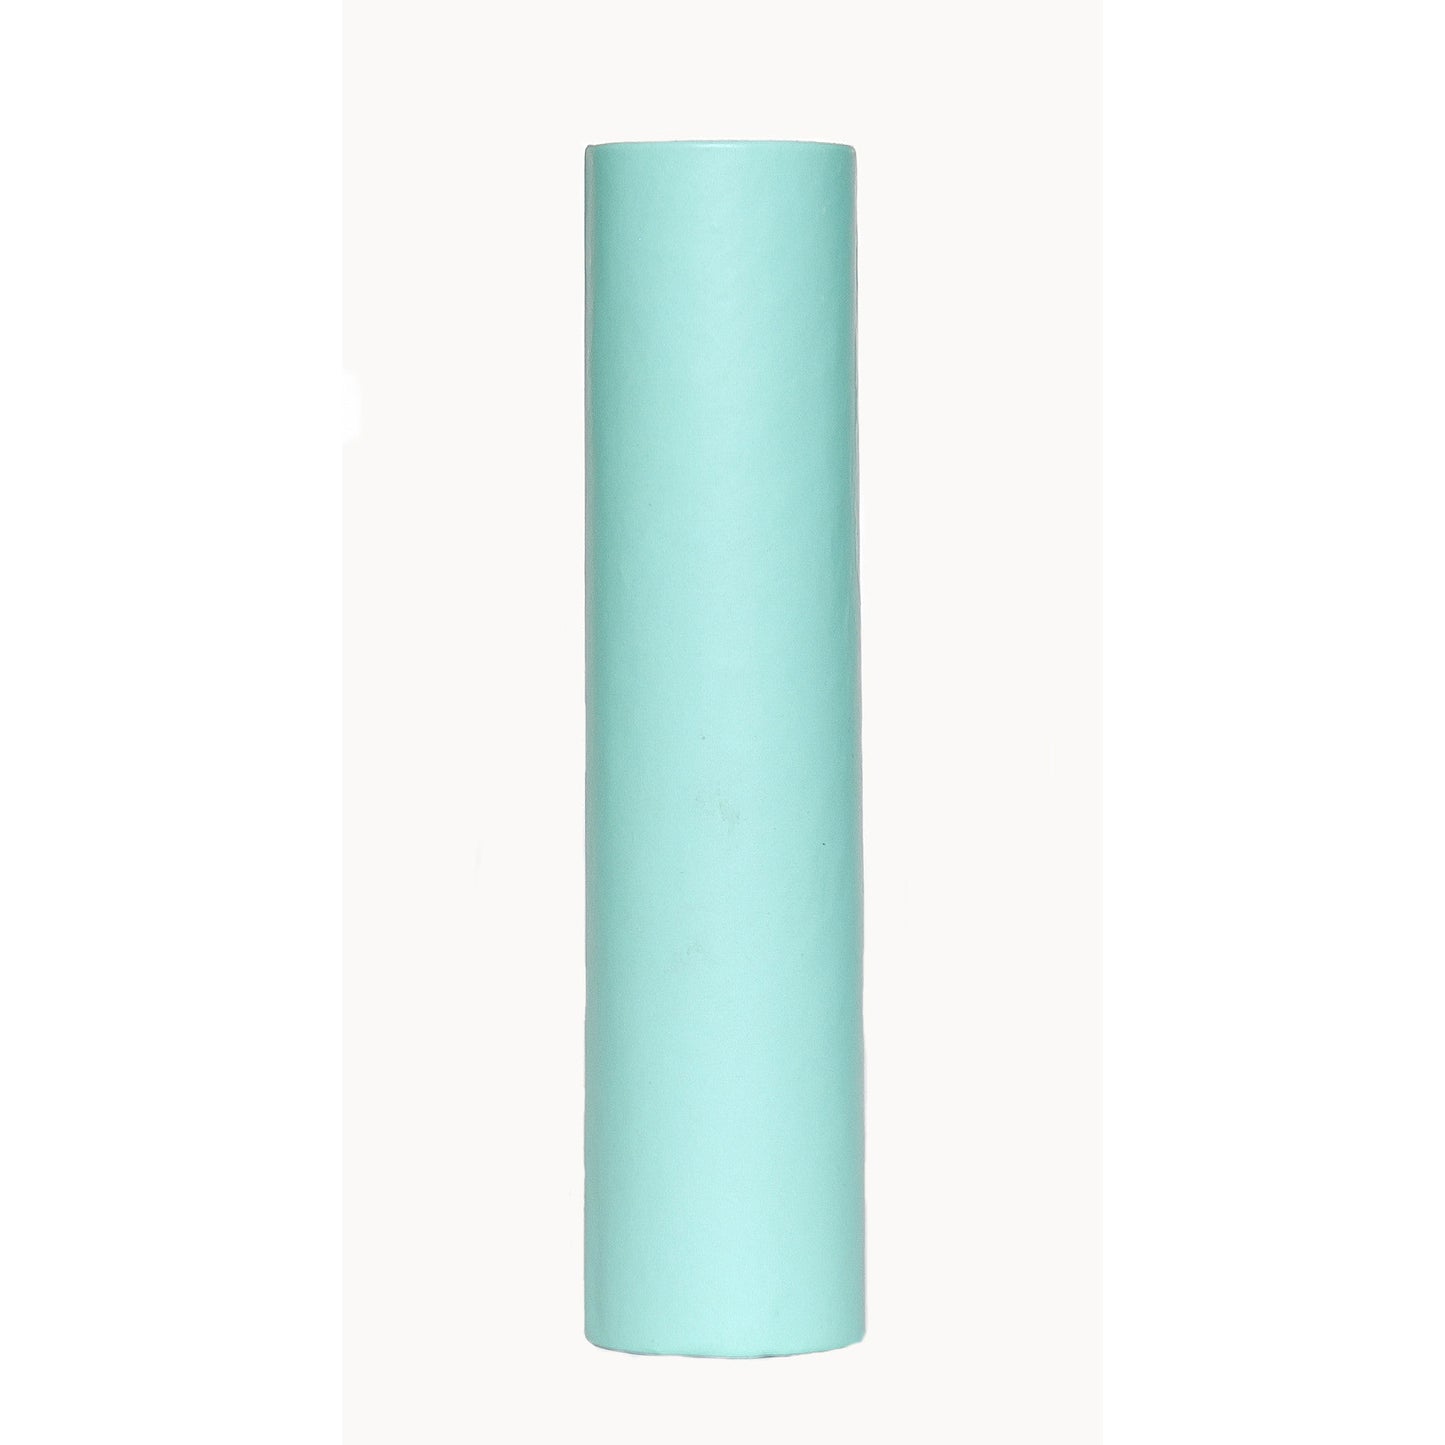 6" kaarskoker® Candle Cover - Solid Color, Candelabra Base